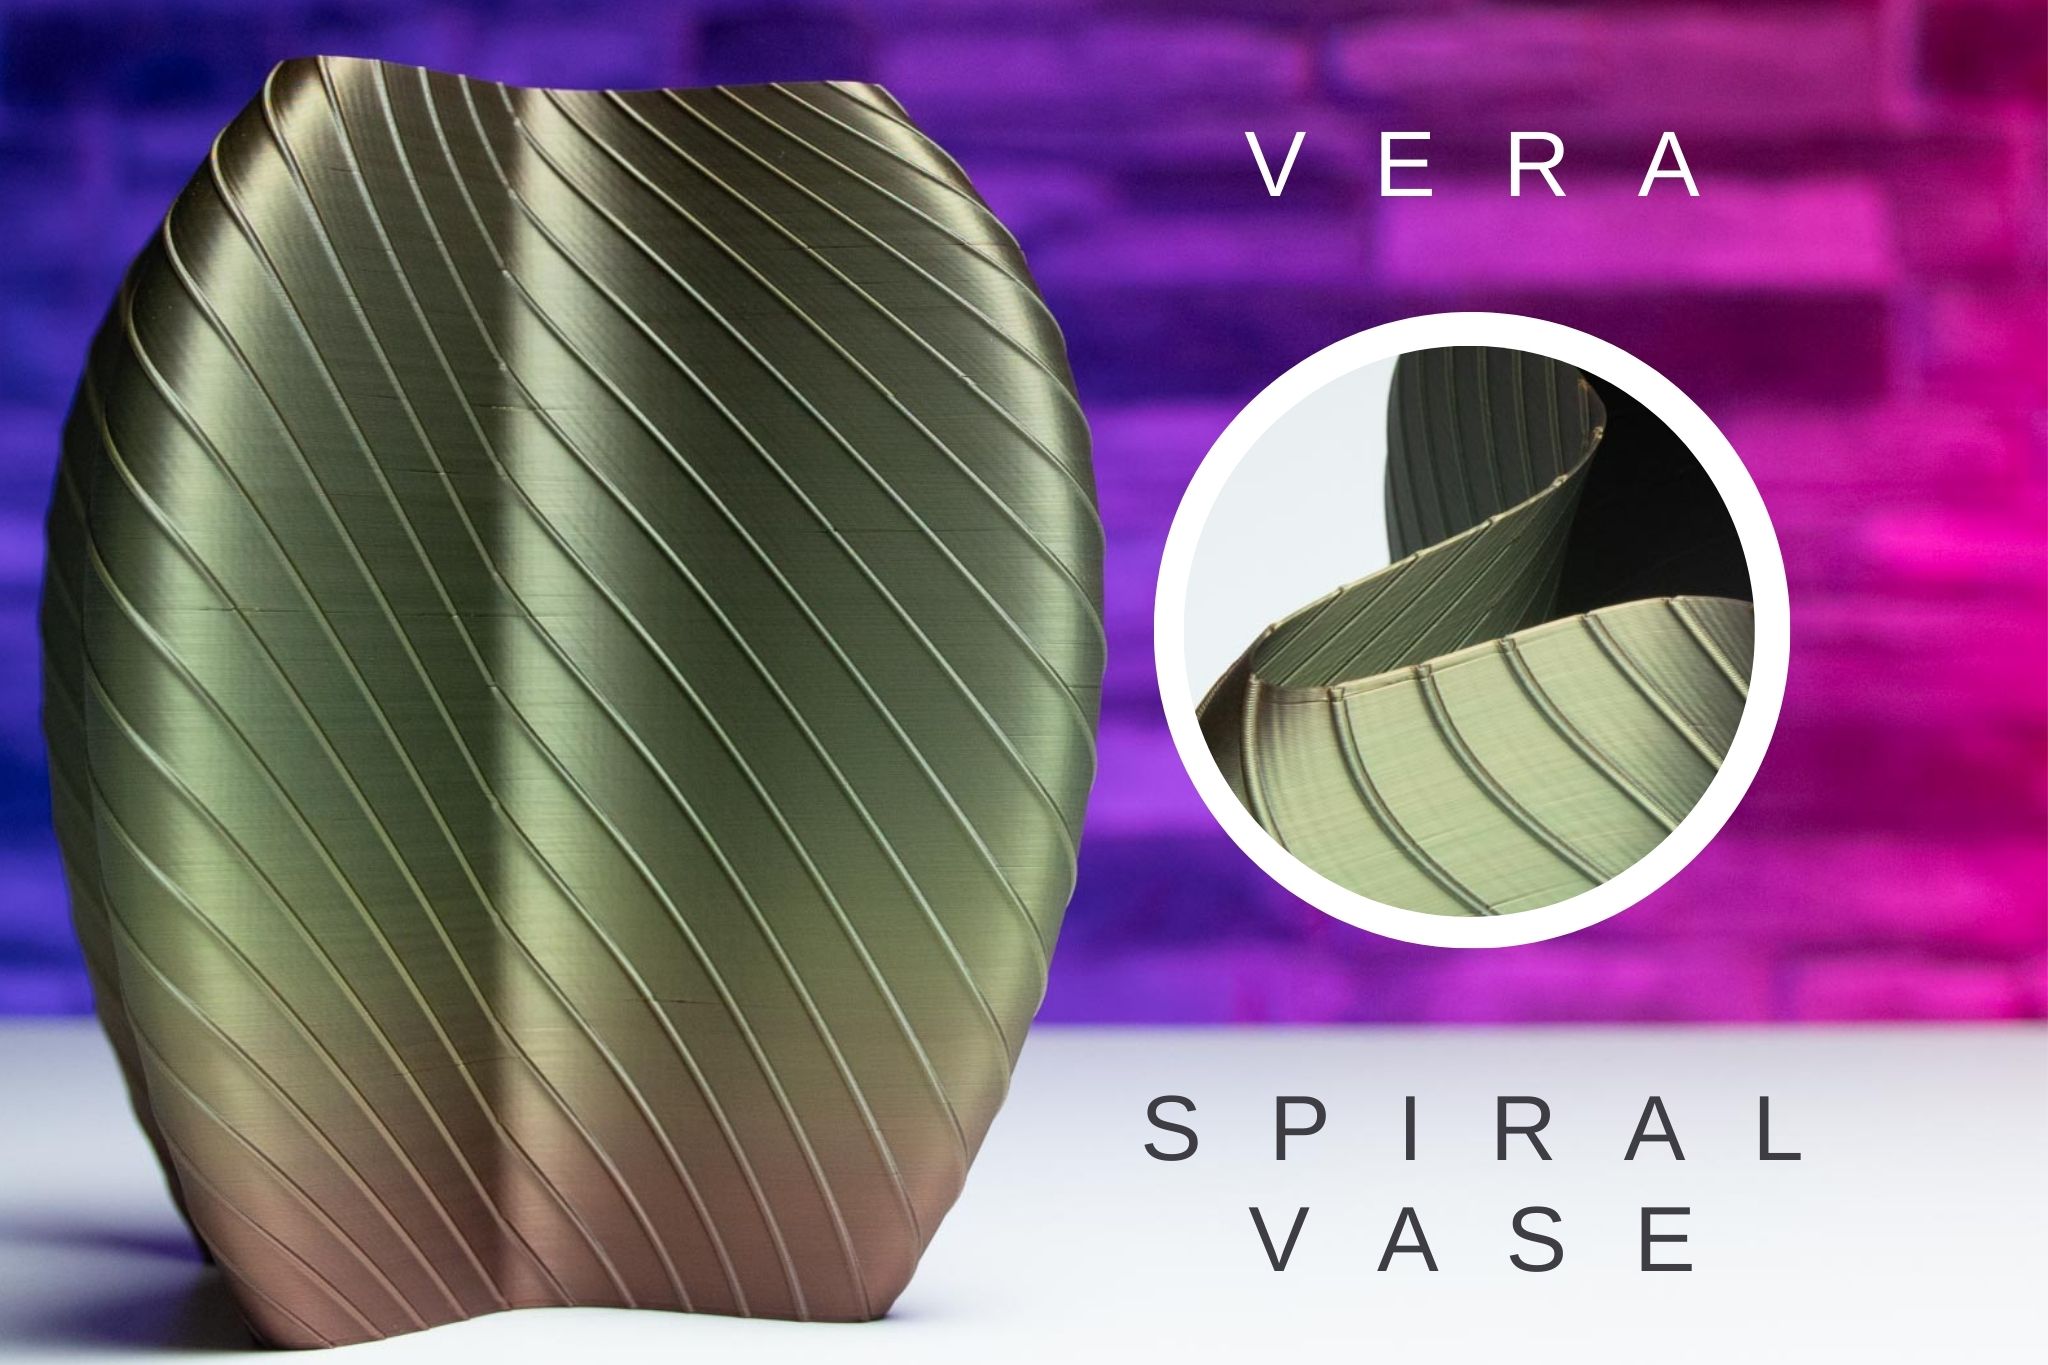 3D Printed Spiral Vase VERA STL for Download